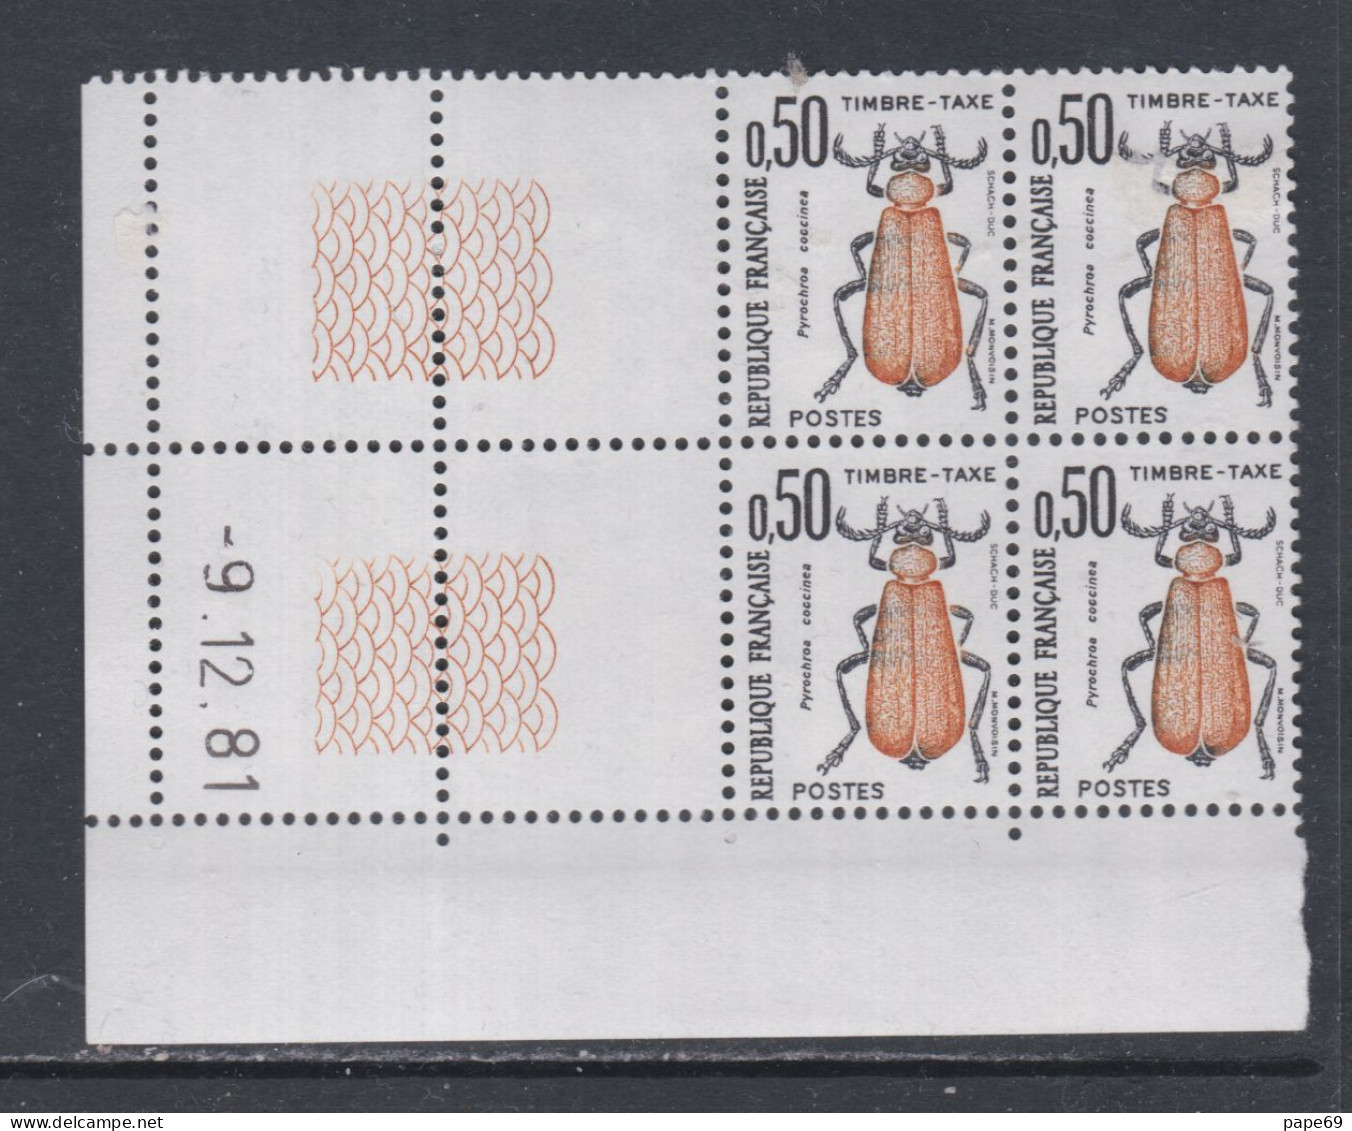 France Timbres-Taxe N° 105 XX Insectes : 50 C. Coléoptère, En Bloc De 4 Coin Daté Du 9 . 12 . 81 ; Sans Trait, Ss Ch. TB - Strafport